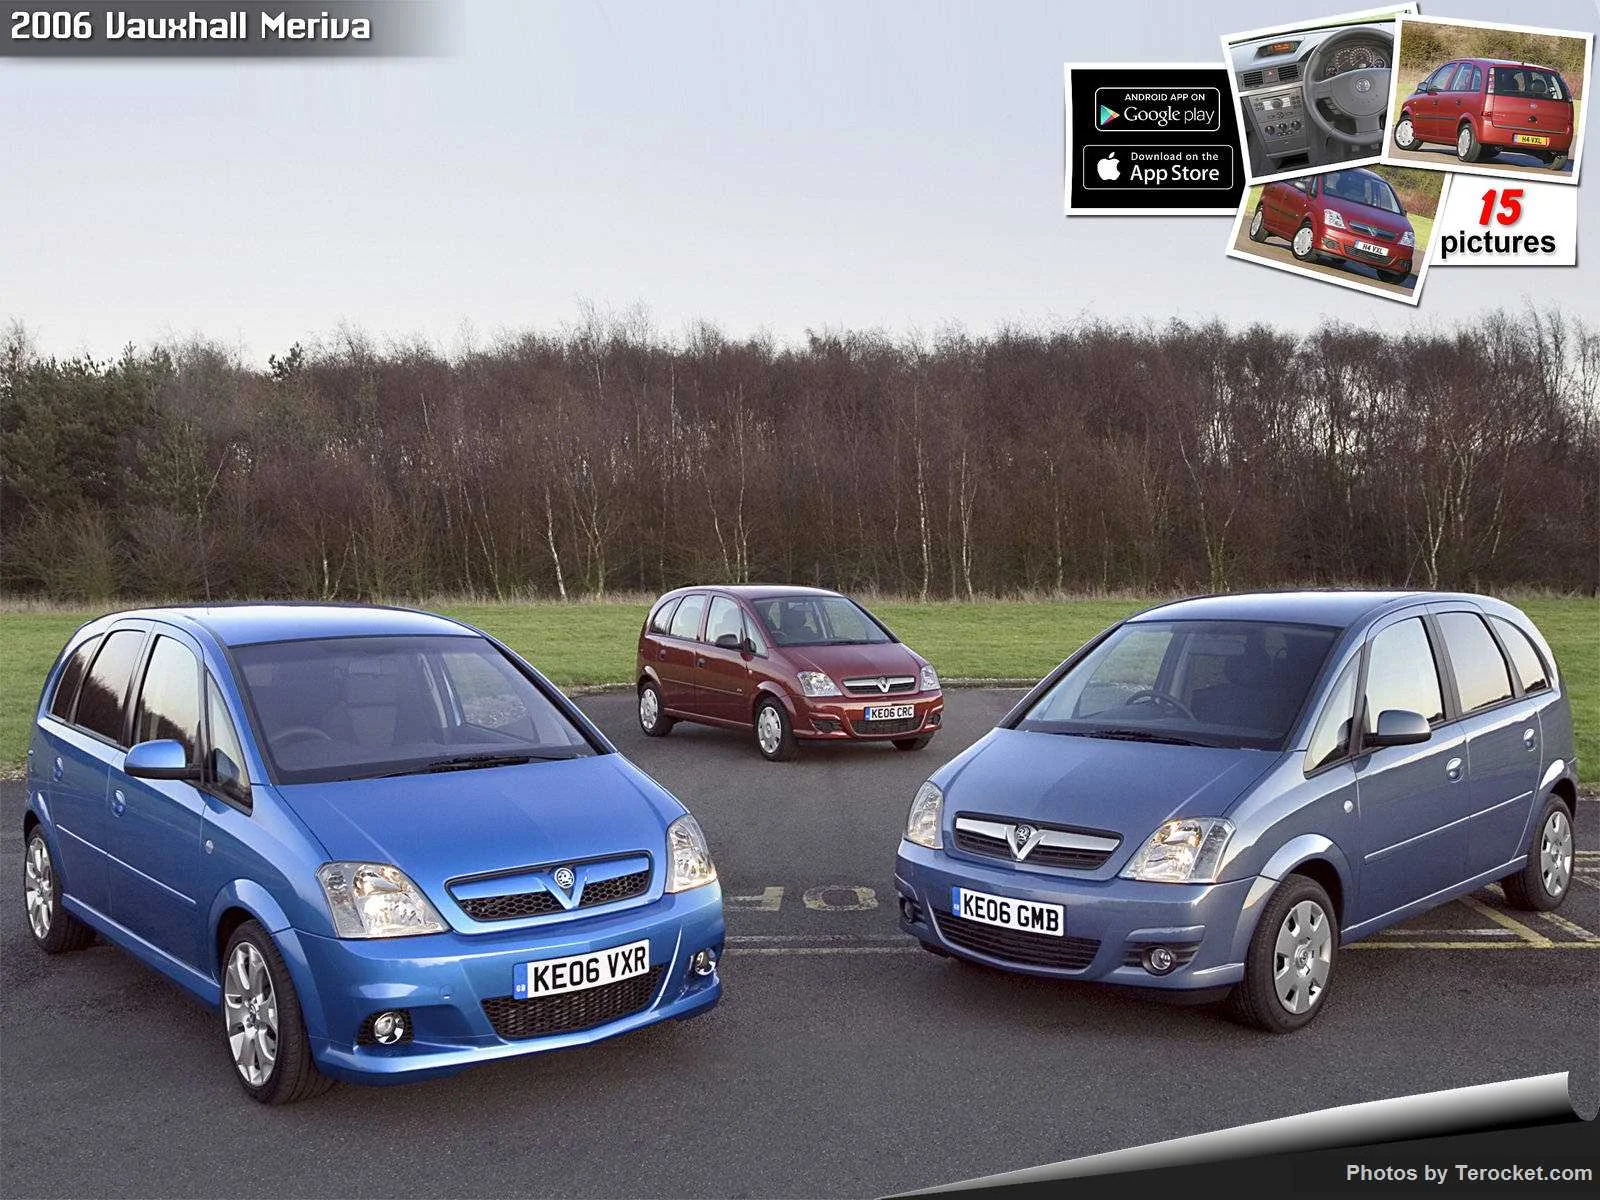 Hình ảnh xe ô tô Vauxhall Meriva 2006 & nội ngoại thất